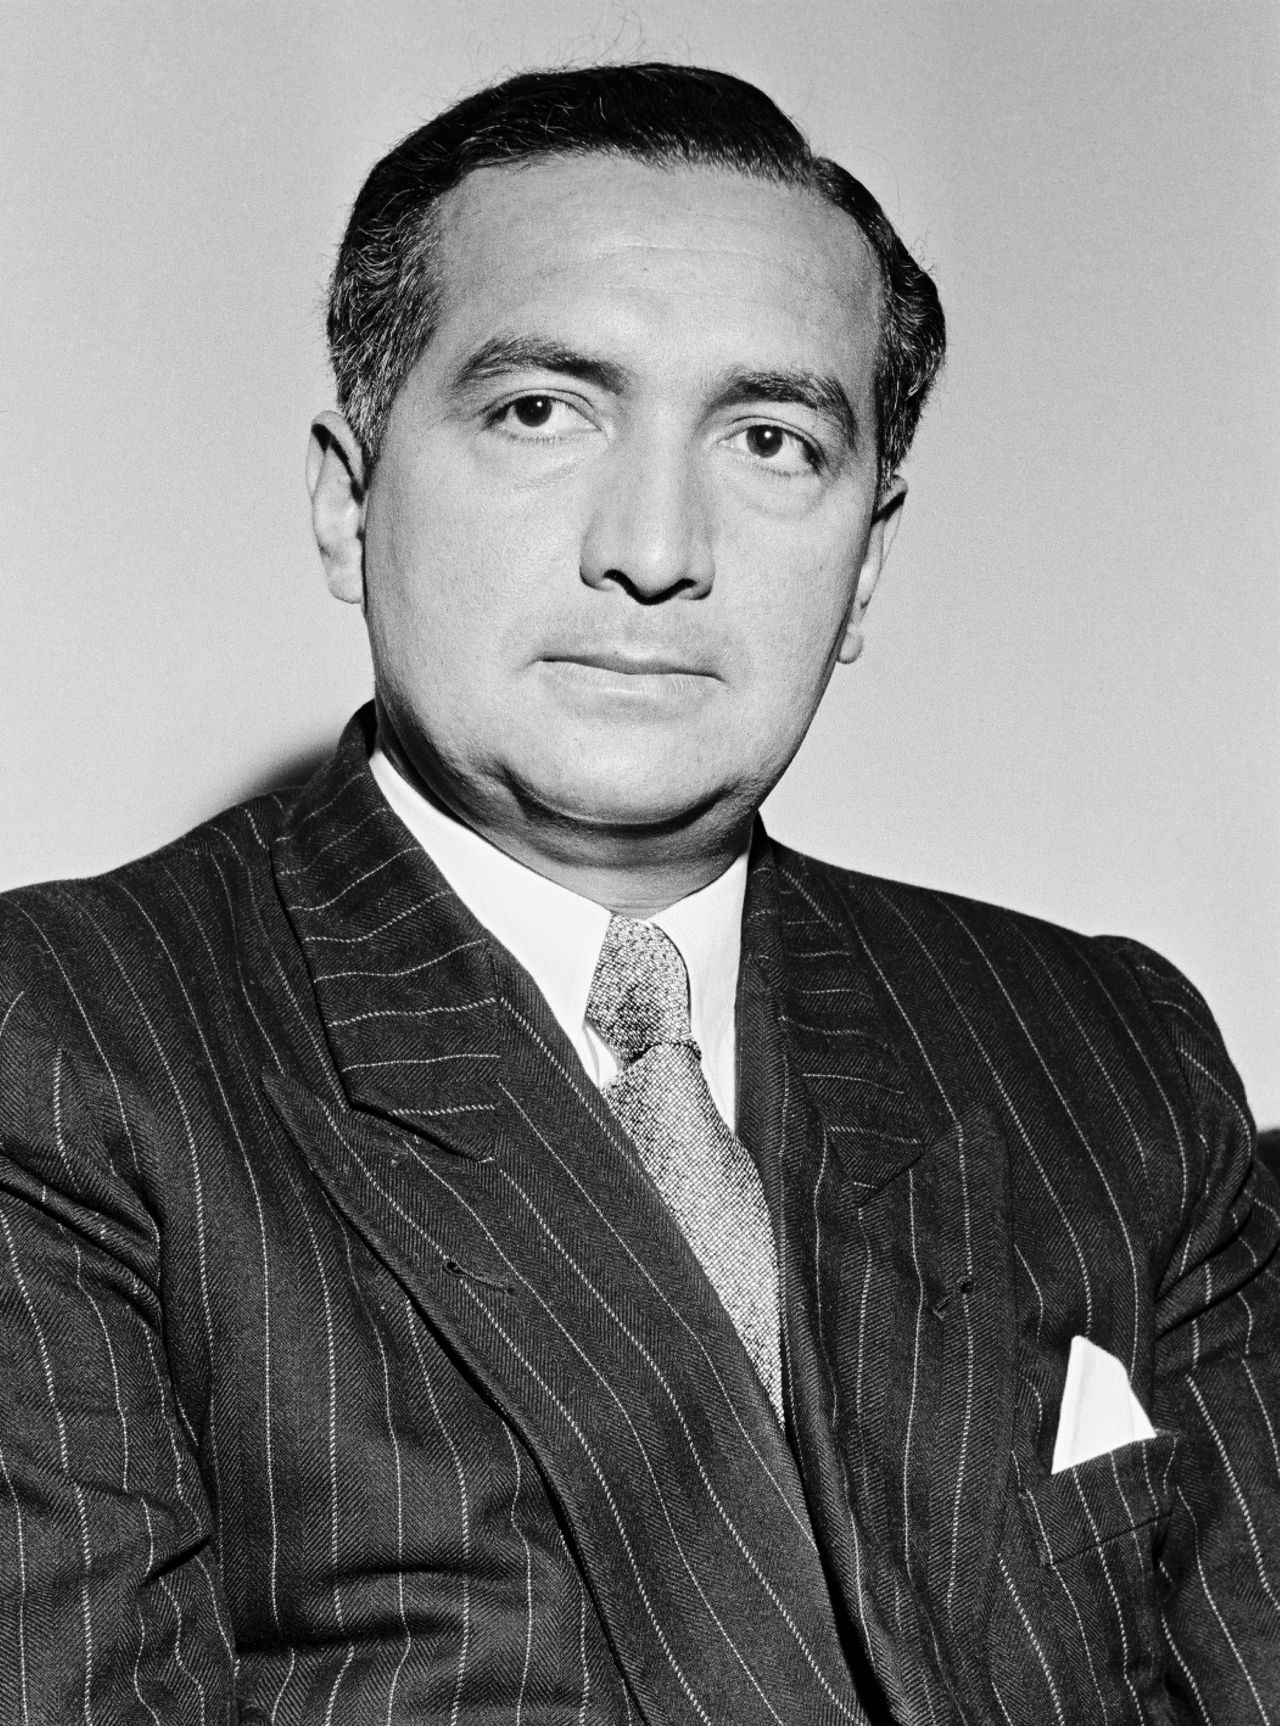 Porträtfoto des FDP-Politikers Erich Mende, 1953.